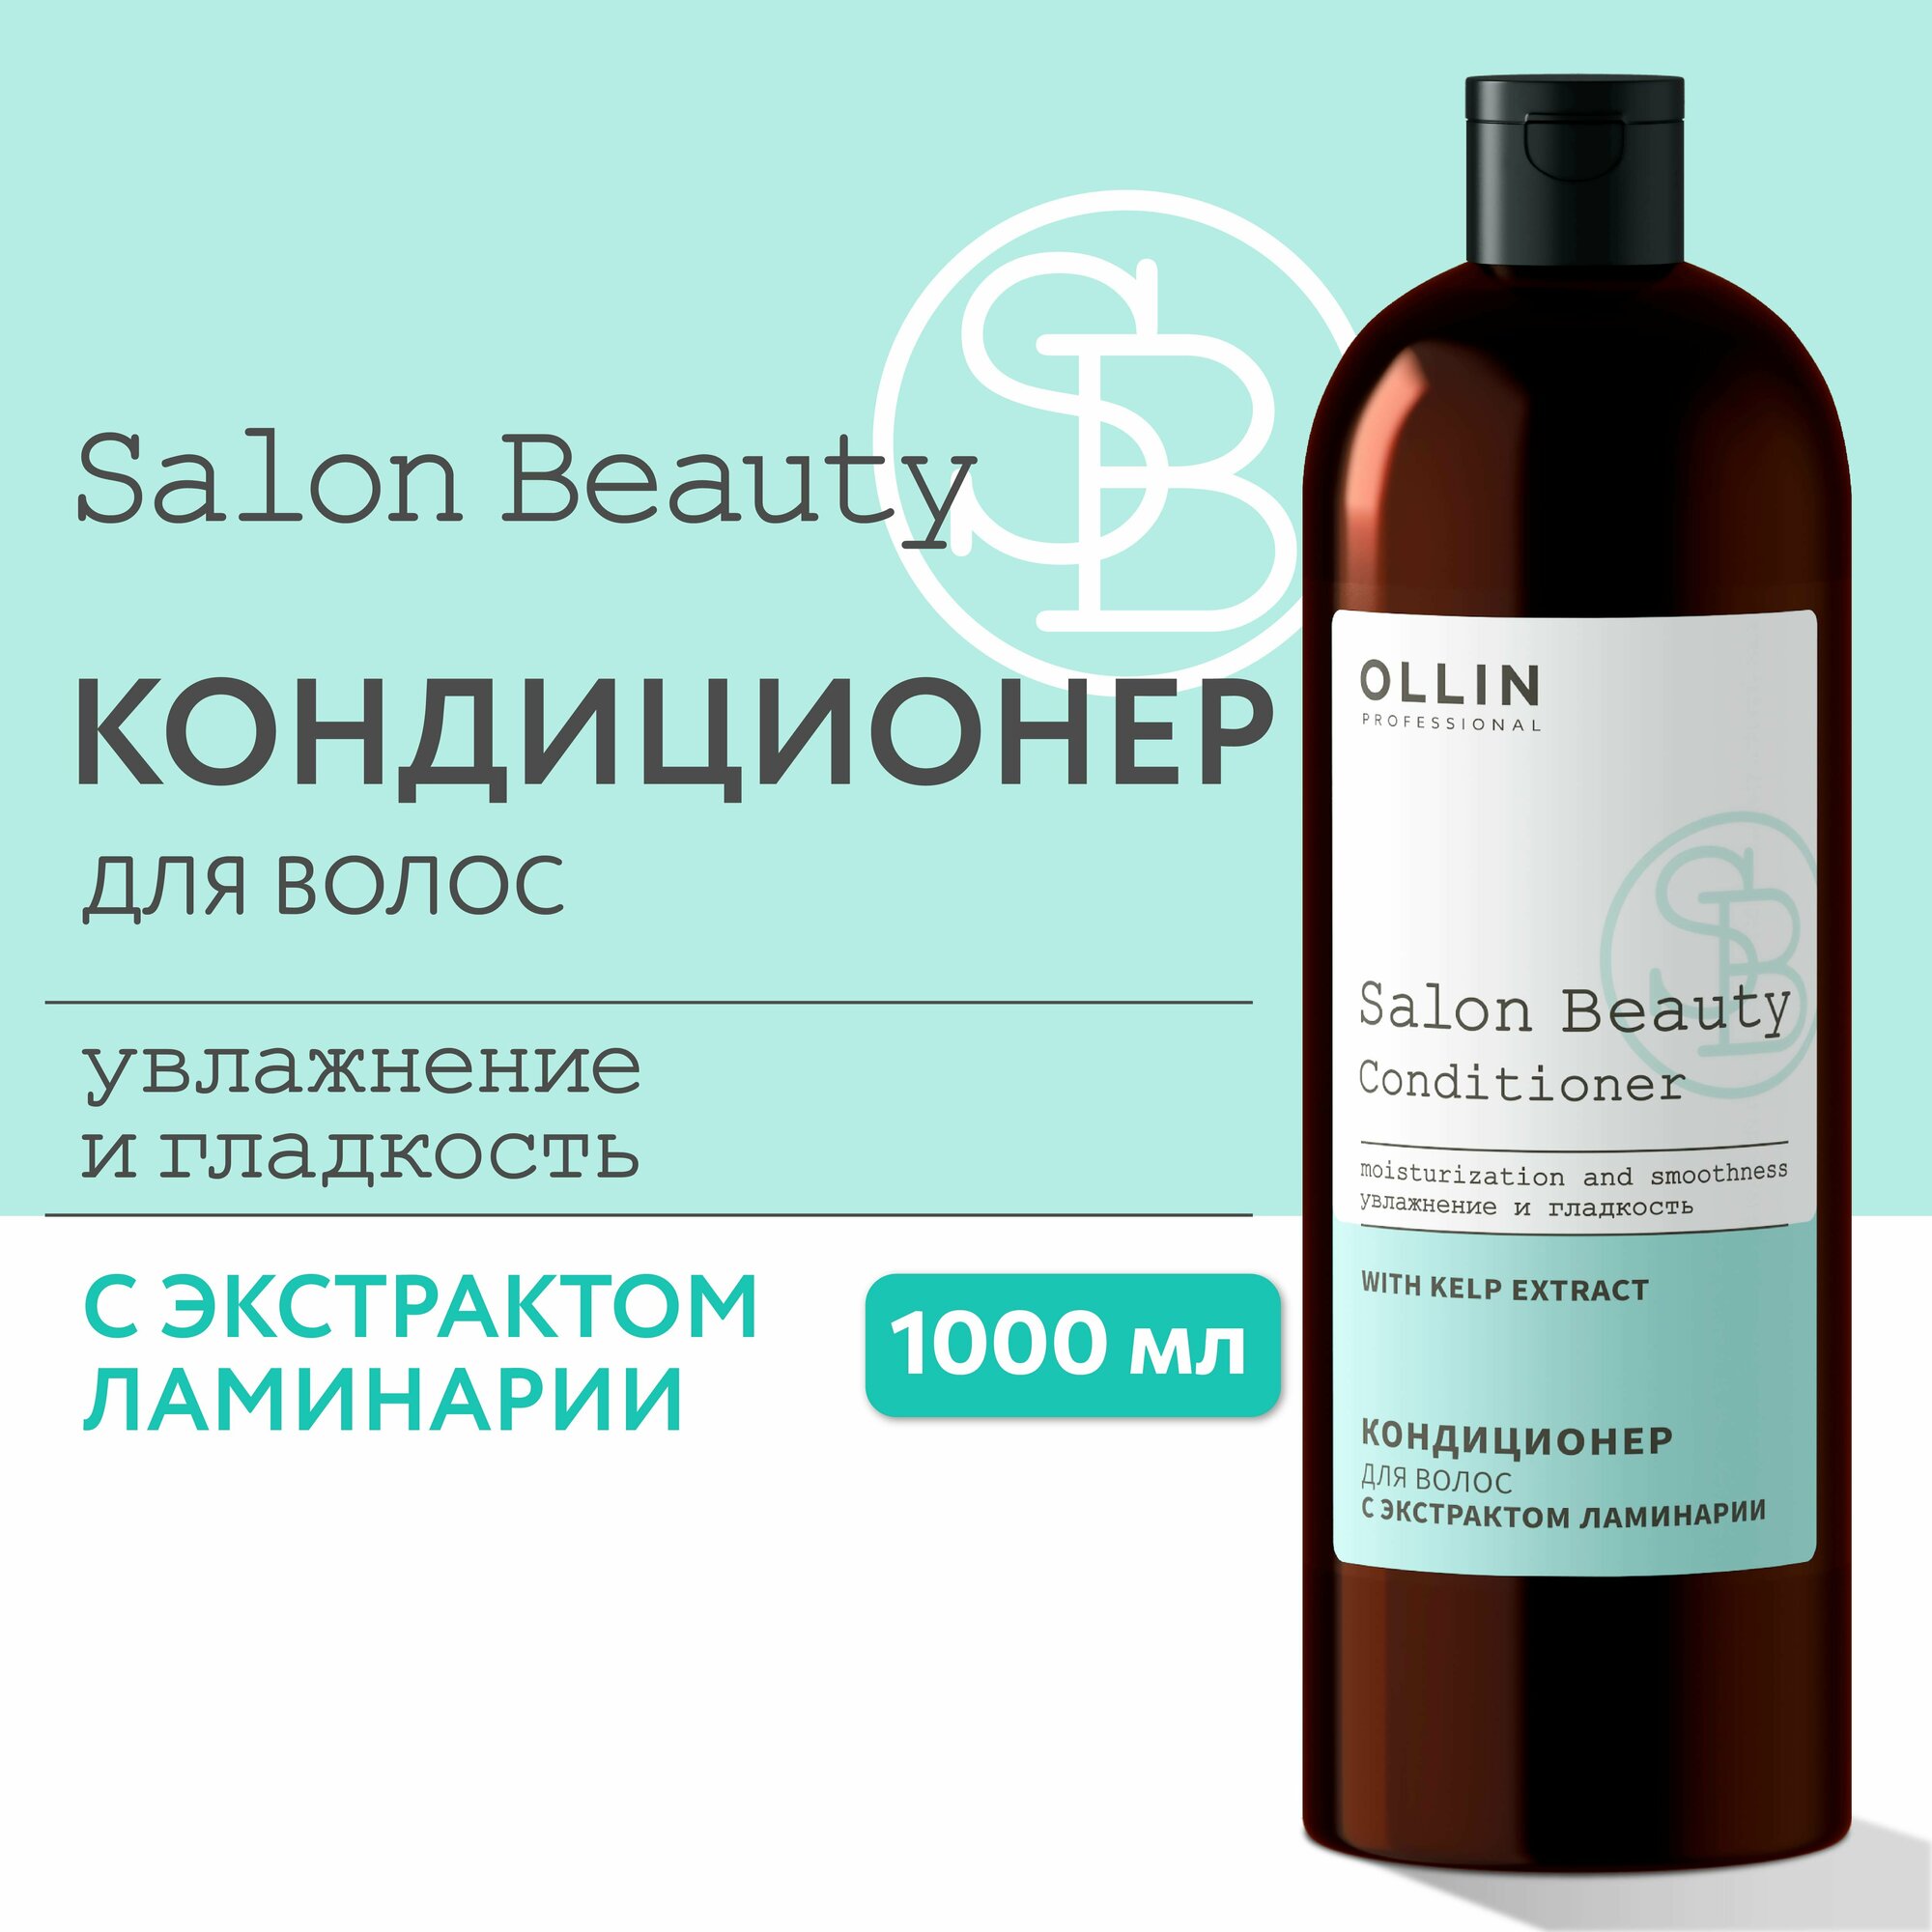 OLLIN PROFESSIONAL Кондиционер для волос с экстрактом ламинарии 1000 мл